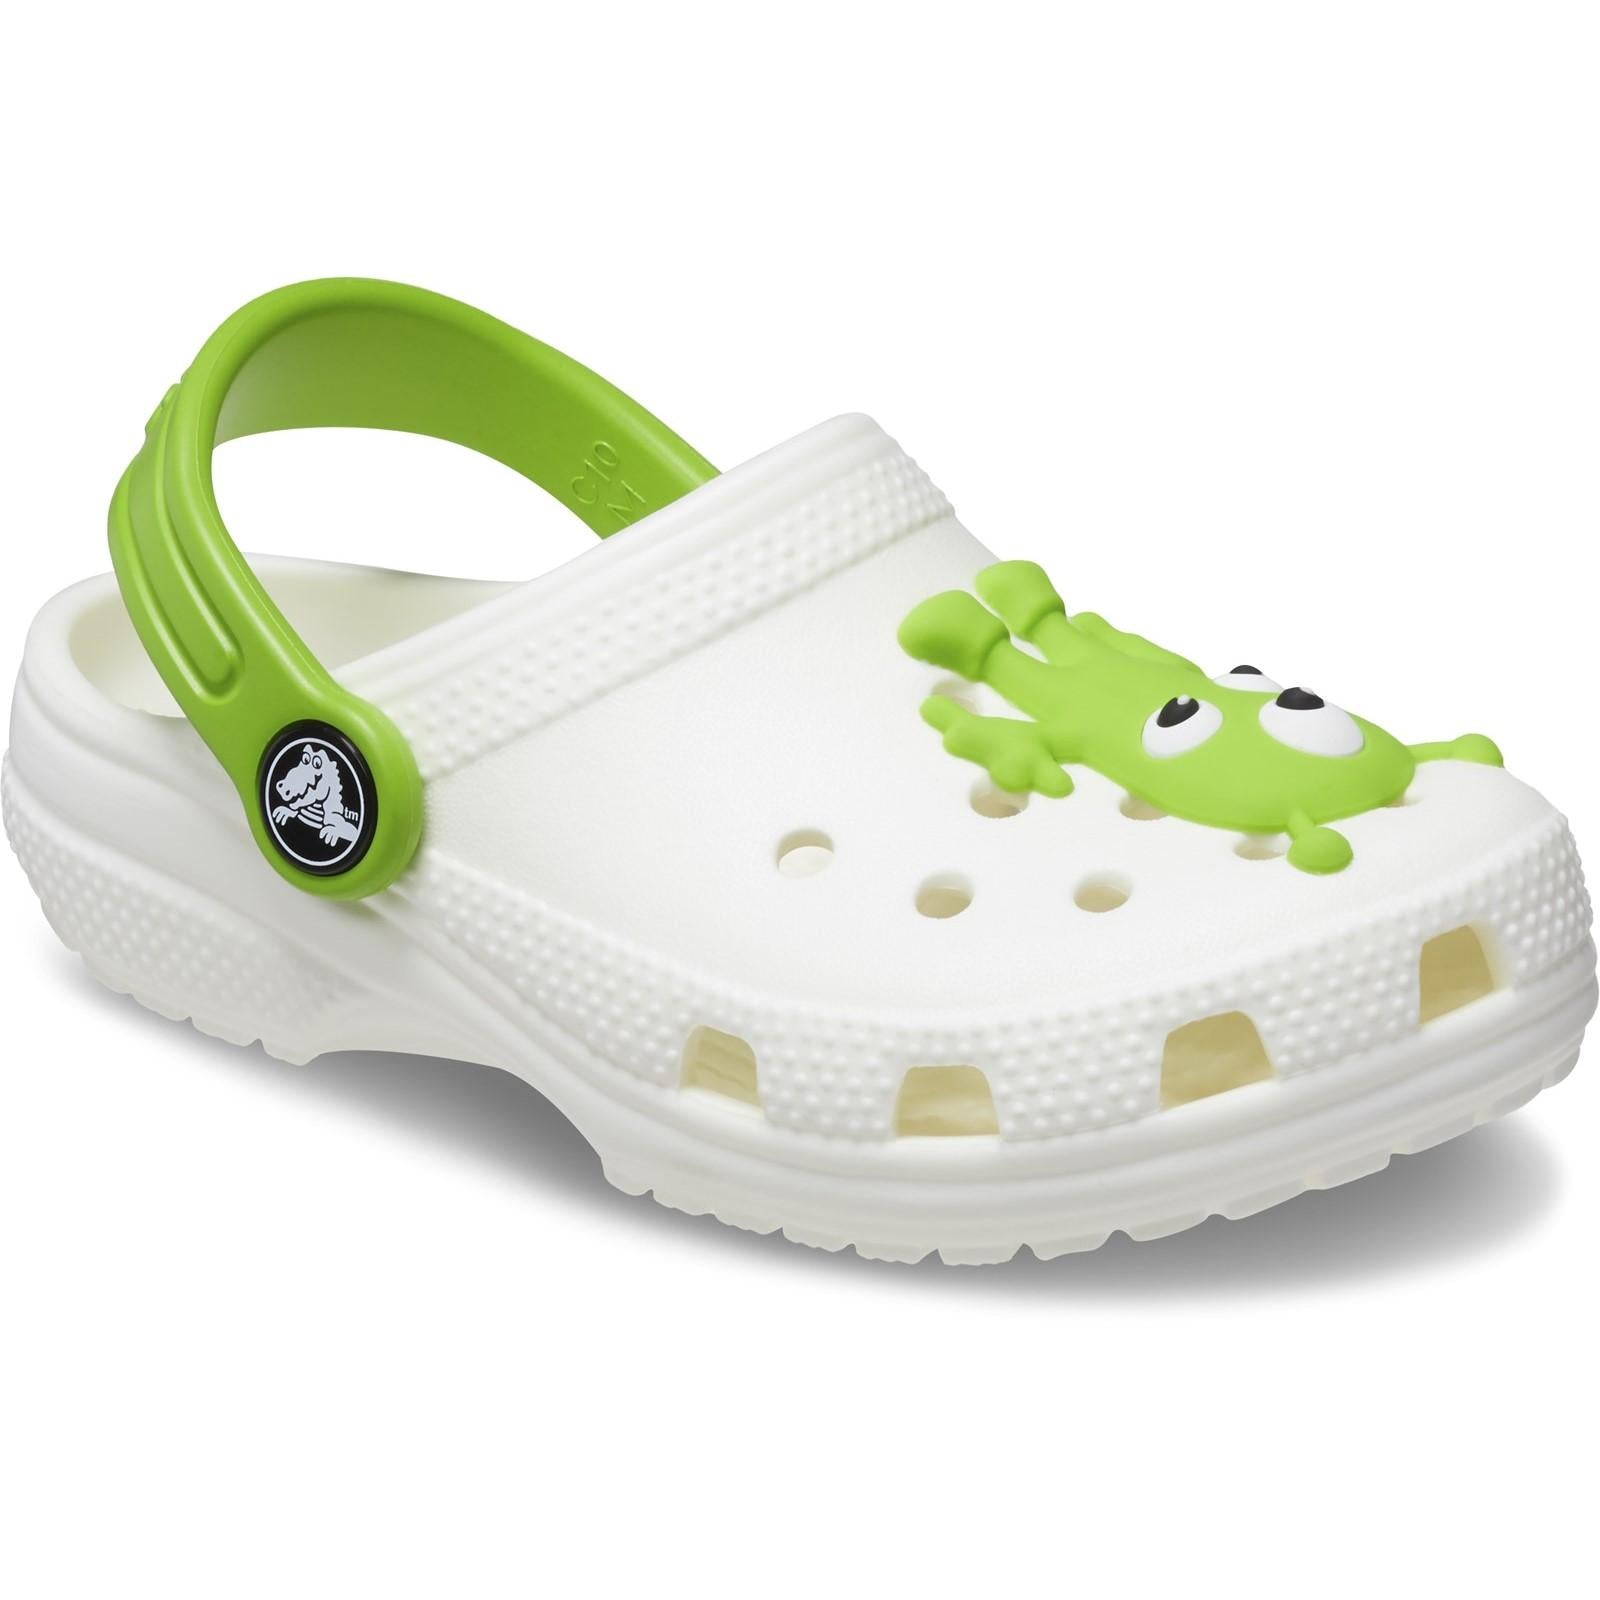 Crocs Classic Alien Character Clog Shoes